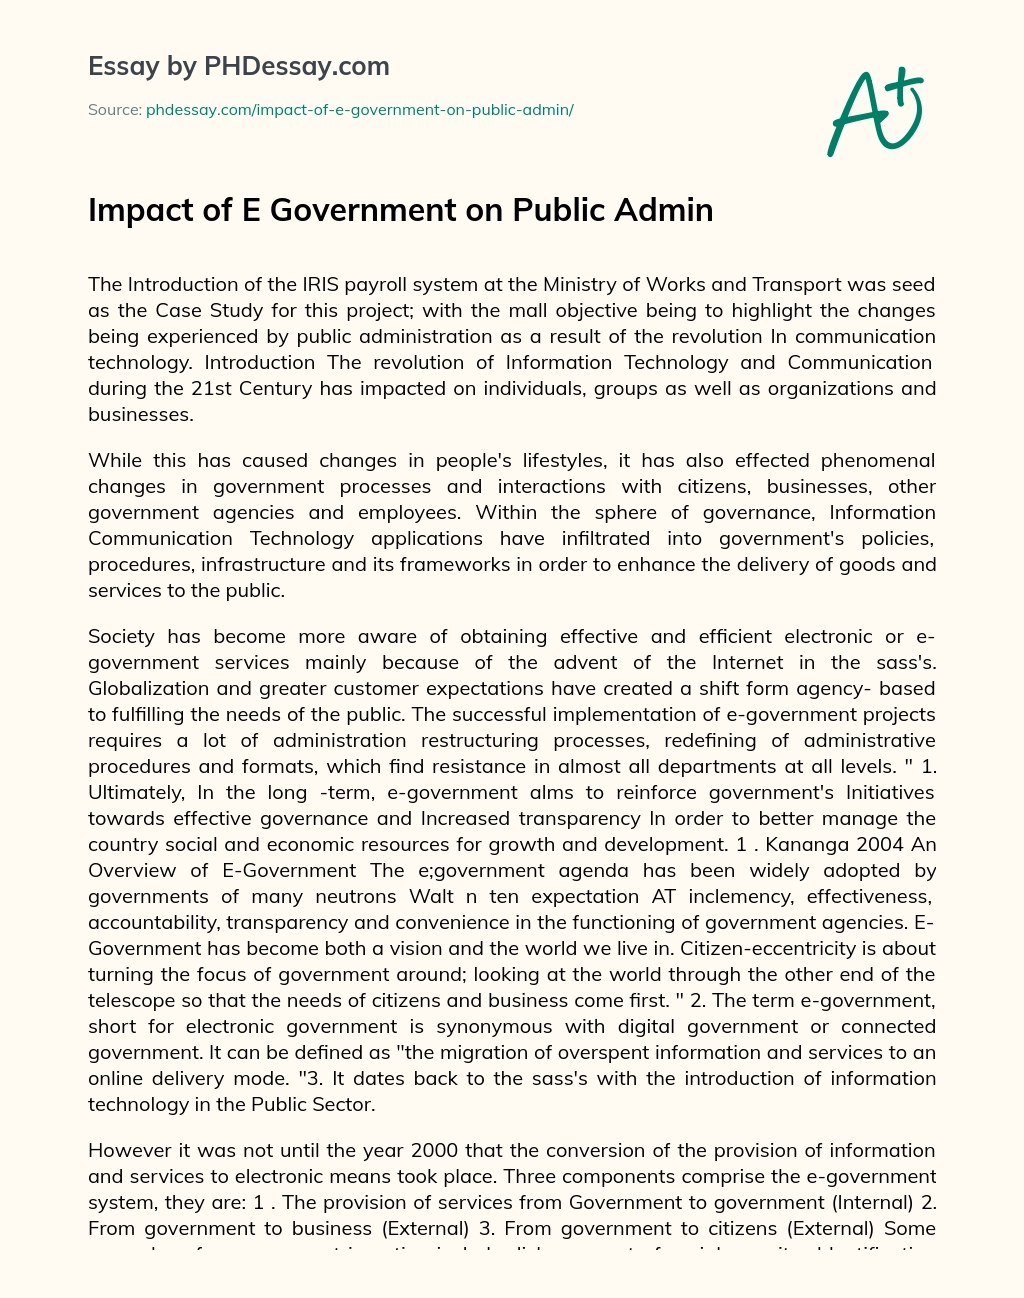 Impact of E Government on Public Admin essay